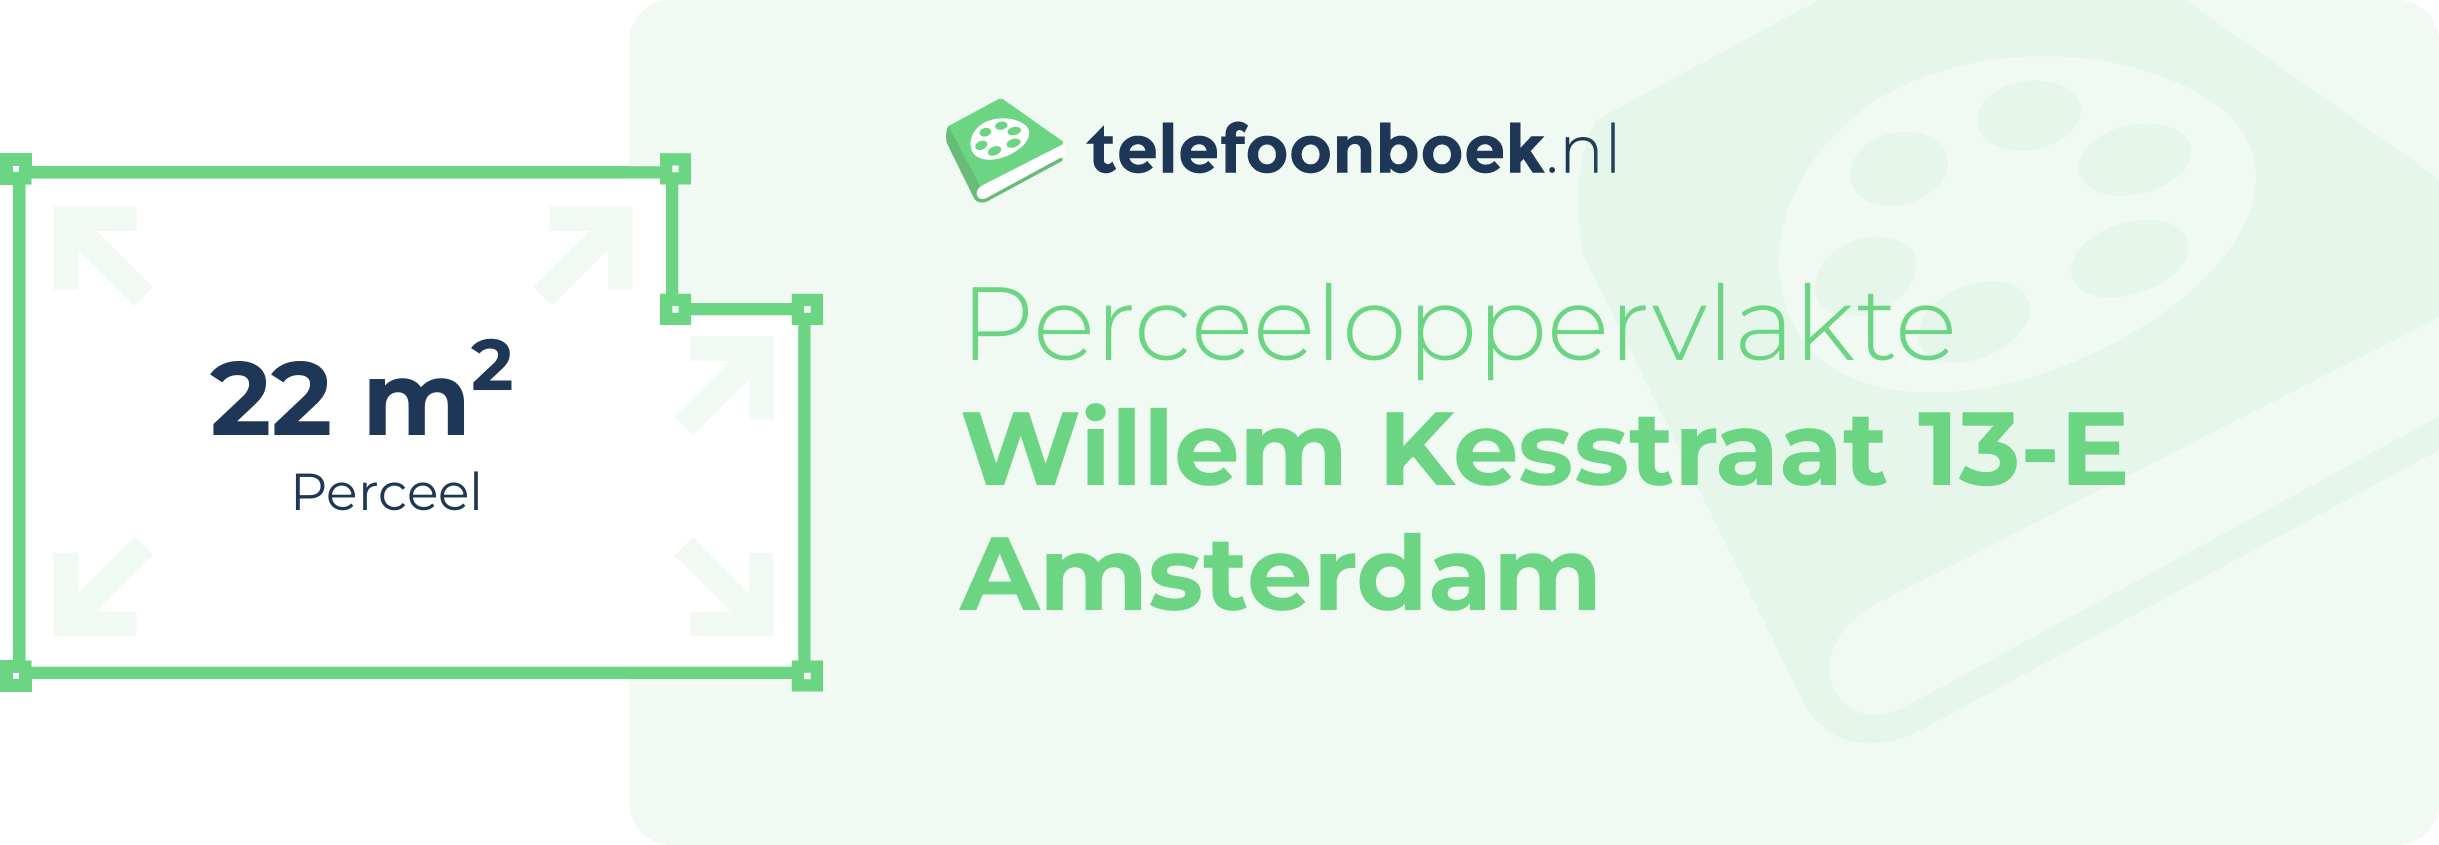 Perceeloppervlakte Willem Kesstraat 13-E Amsterdam